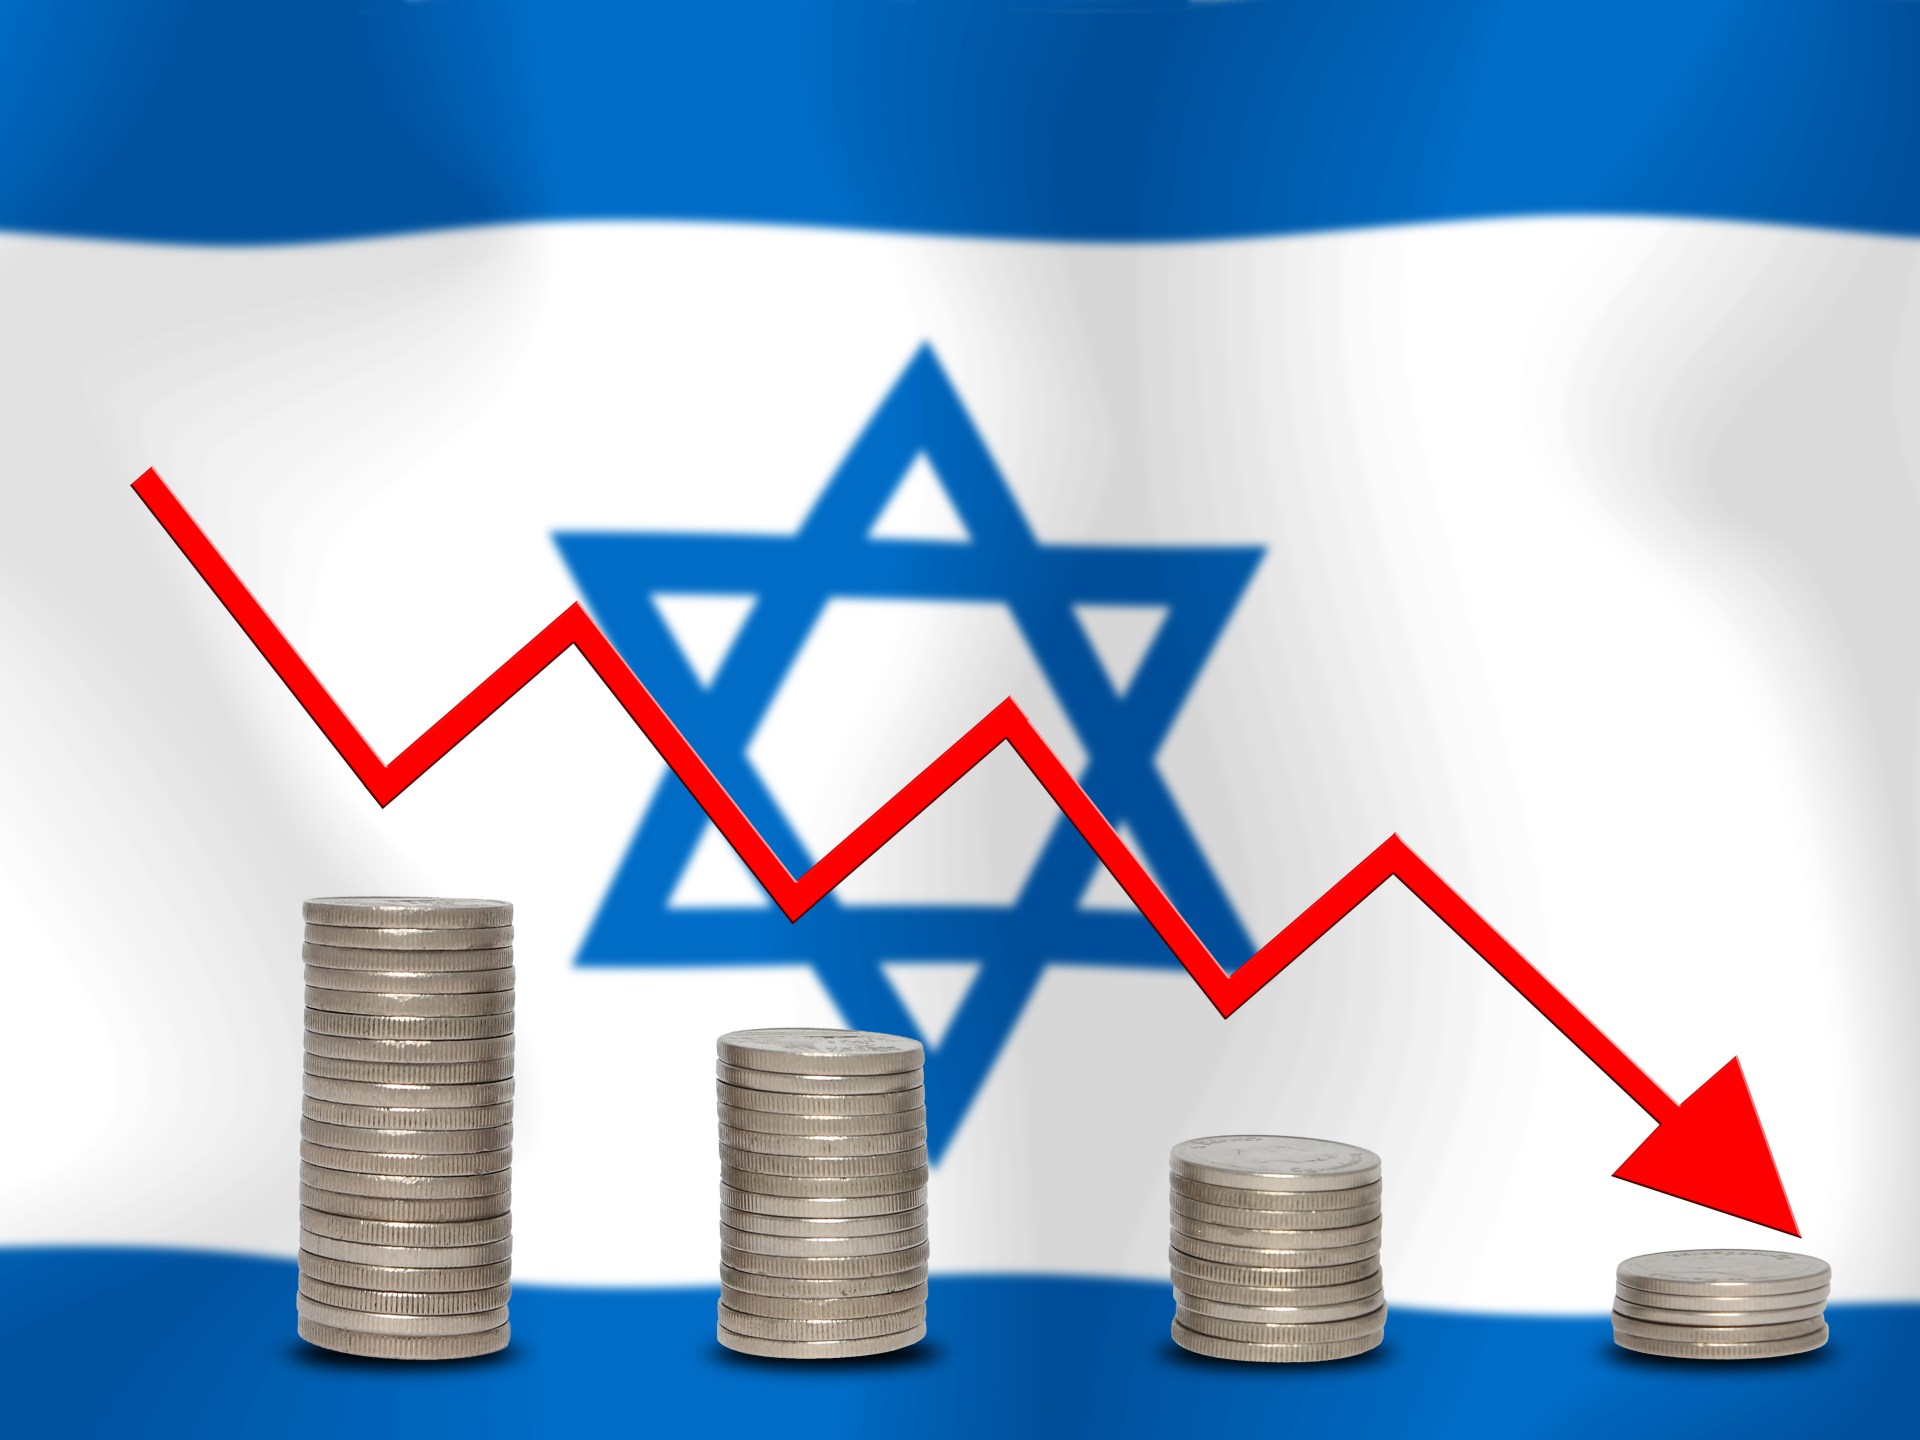 صحيفة: إسرائيل جمعت أكثر من 3 مليارات دولار منذ بداية الحرب على غزة | اقتصاد – البوكس نيوز